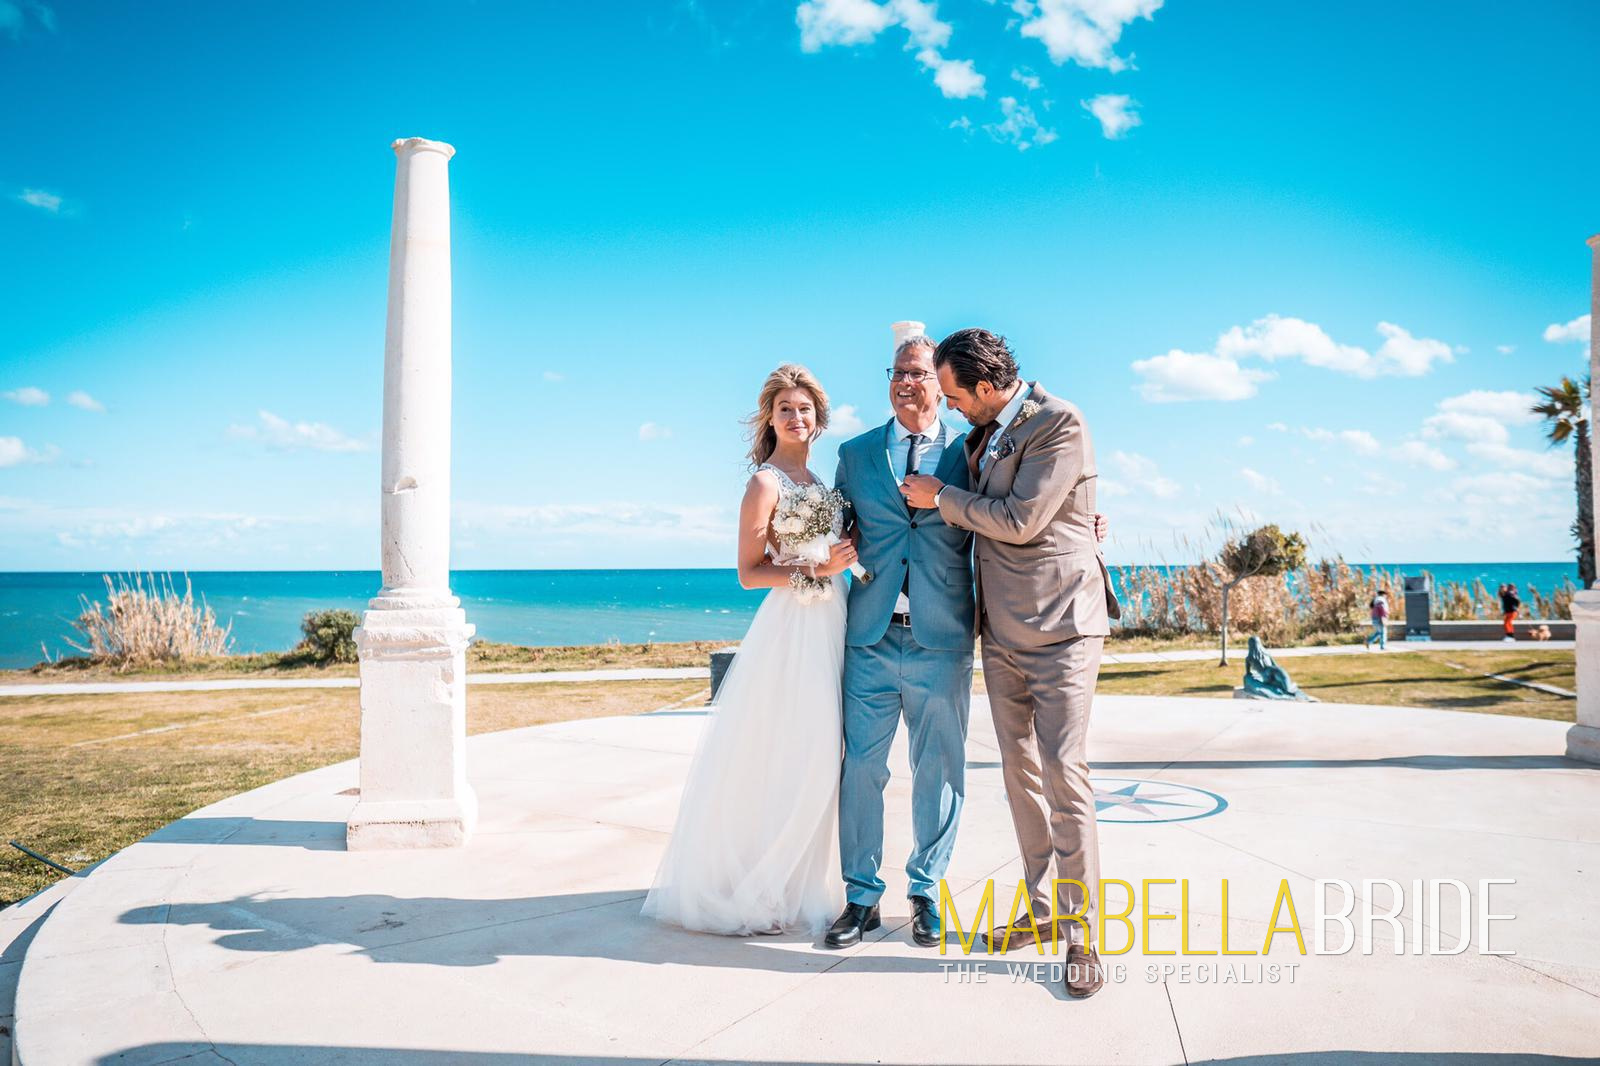 Wedding ceremonies in Spain, Marbella